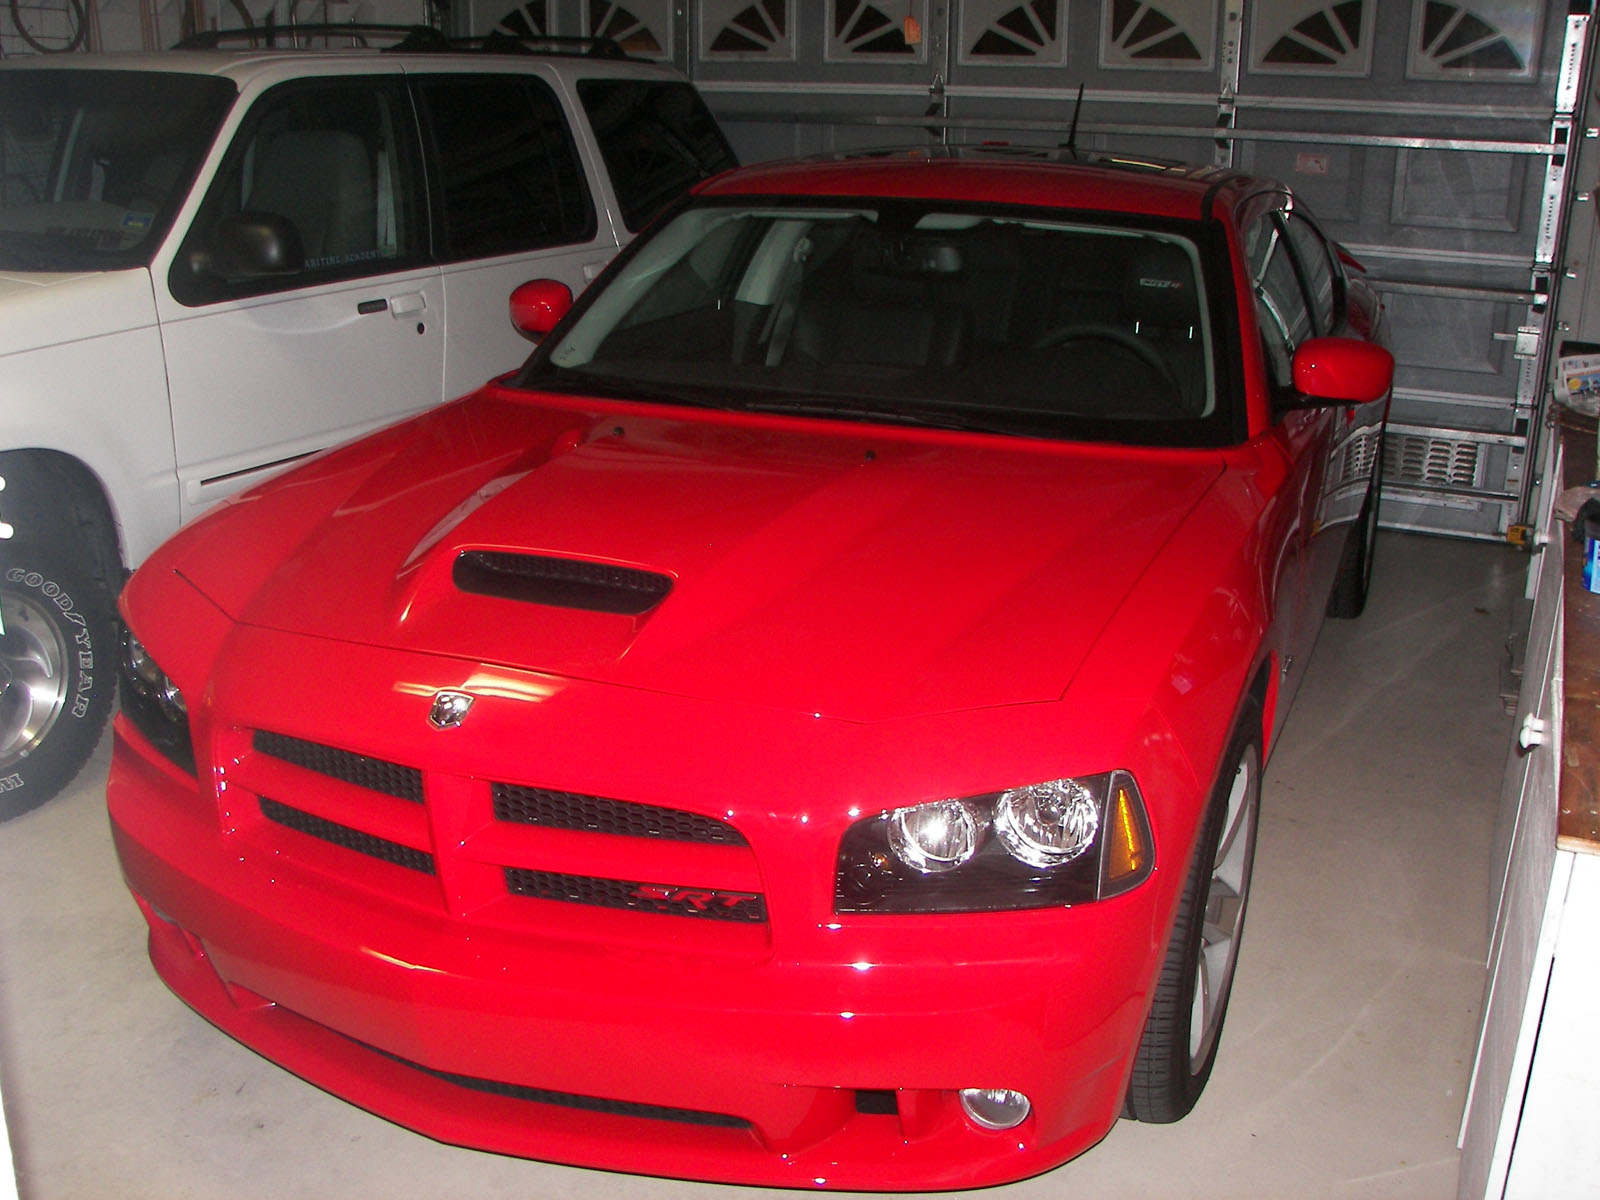  2008 Dodge Charger srt8